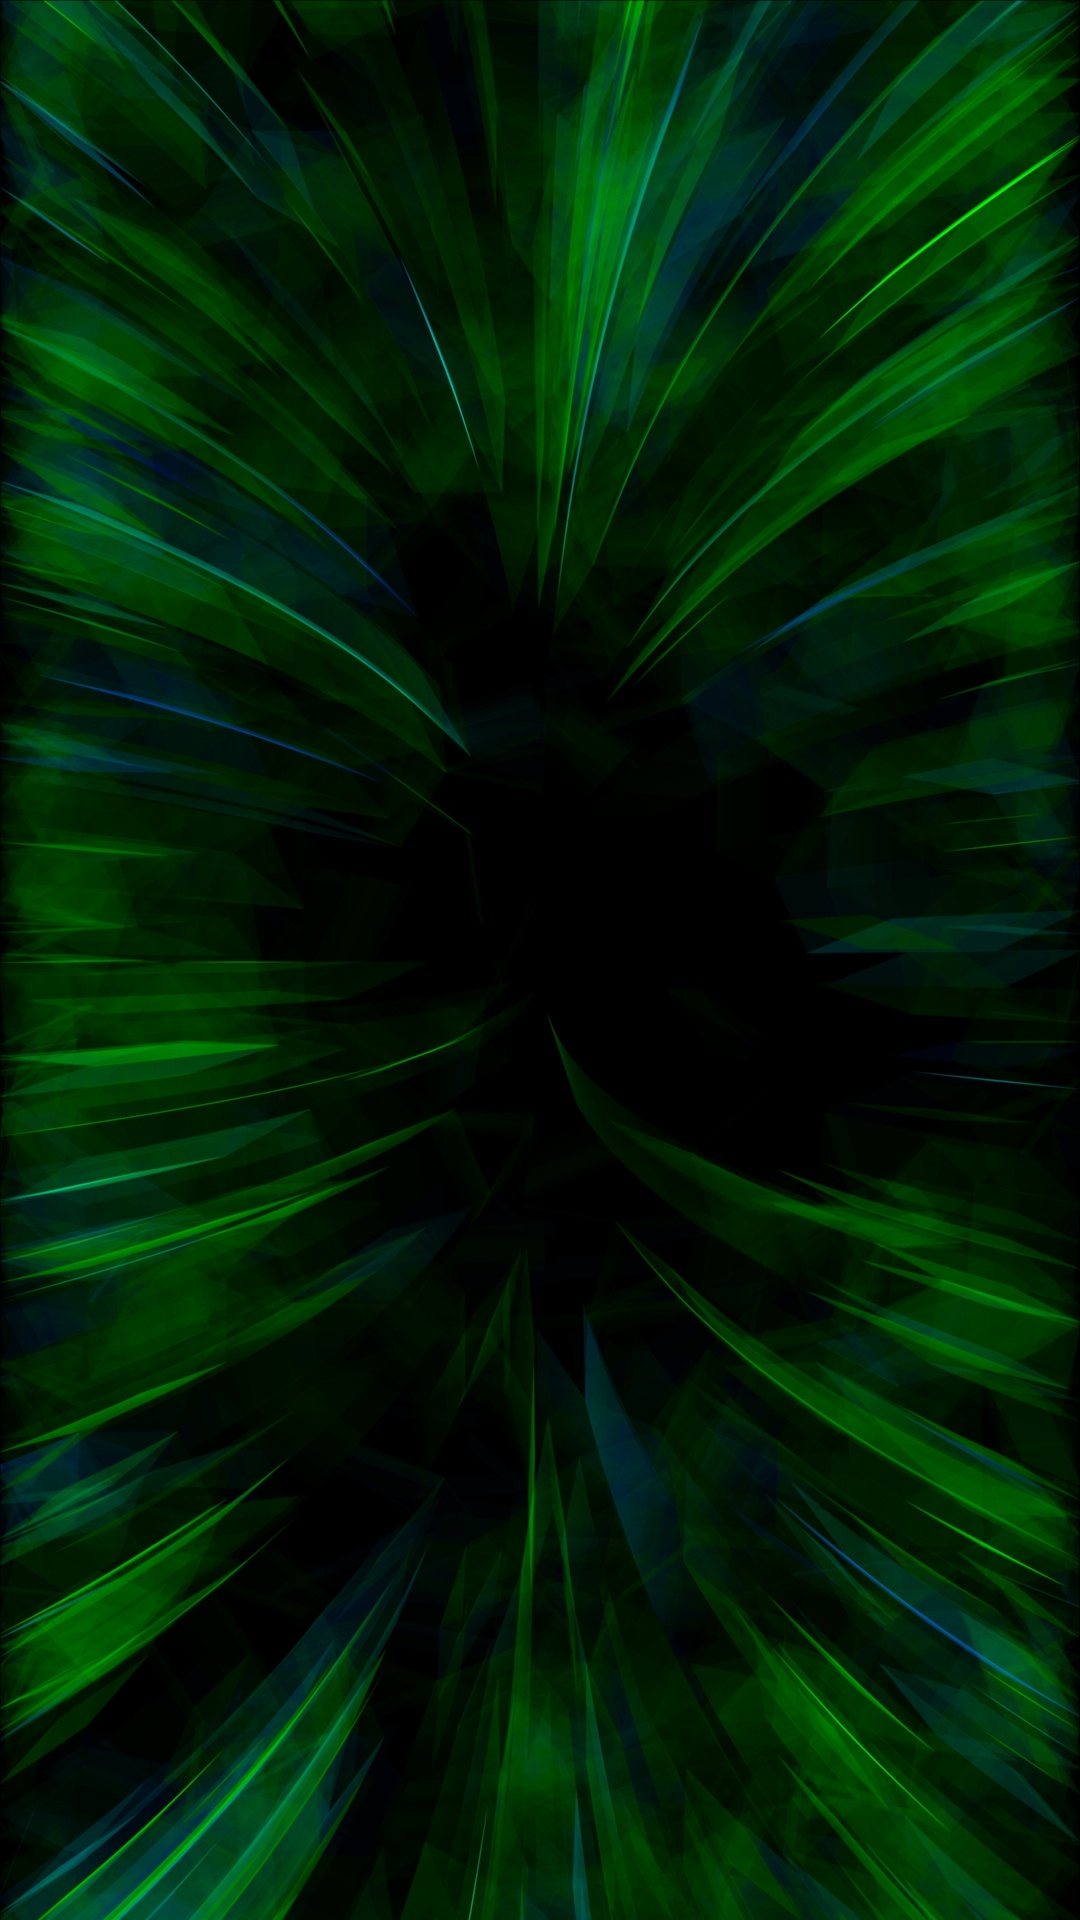 Papel Tapiz Digital de Luz Verde y Blanca. Wallpaper in 1080x1920 Resolution